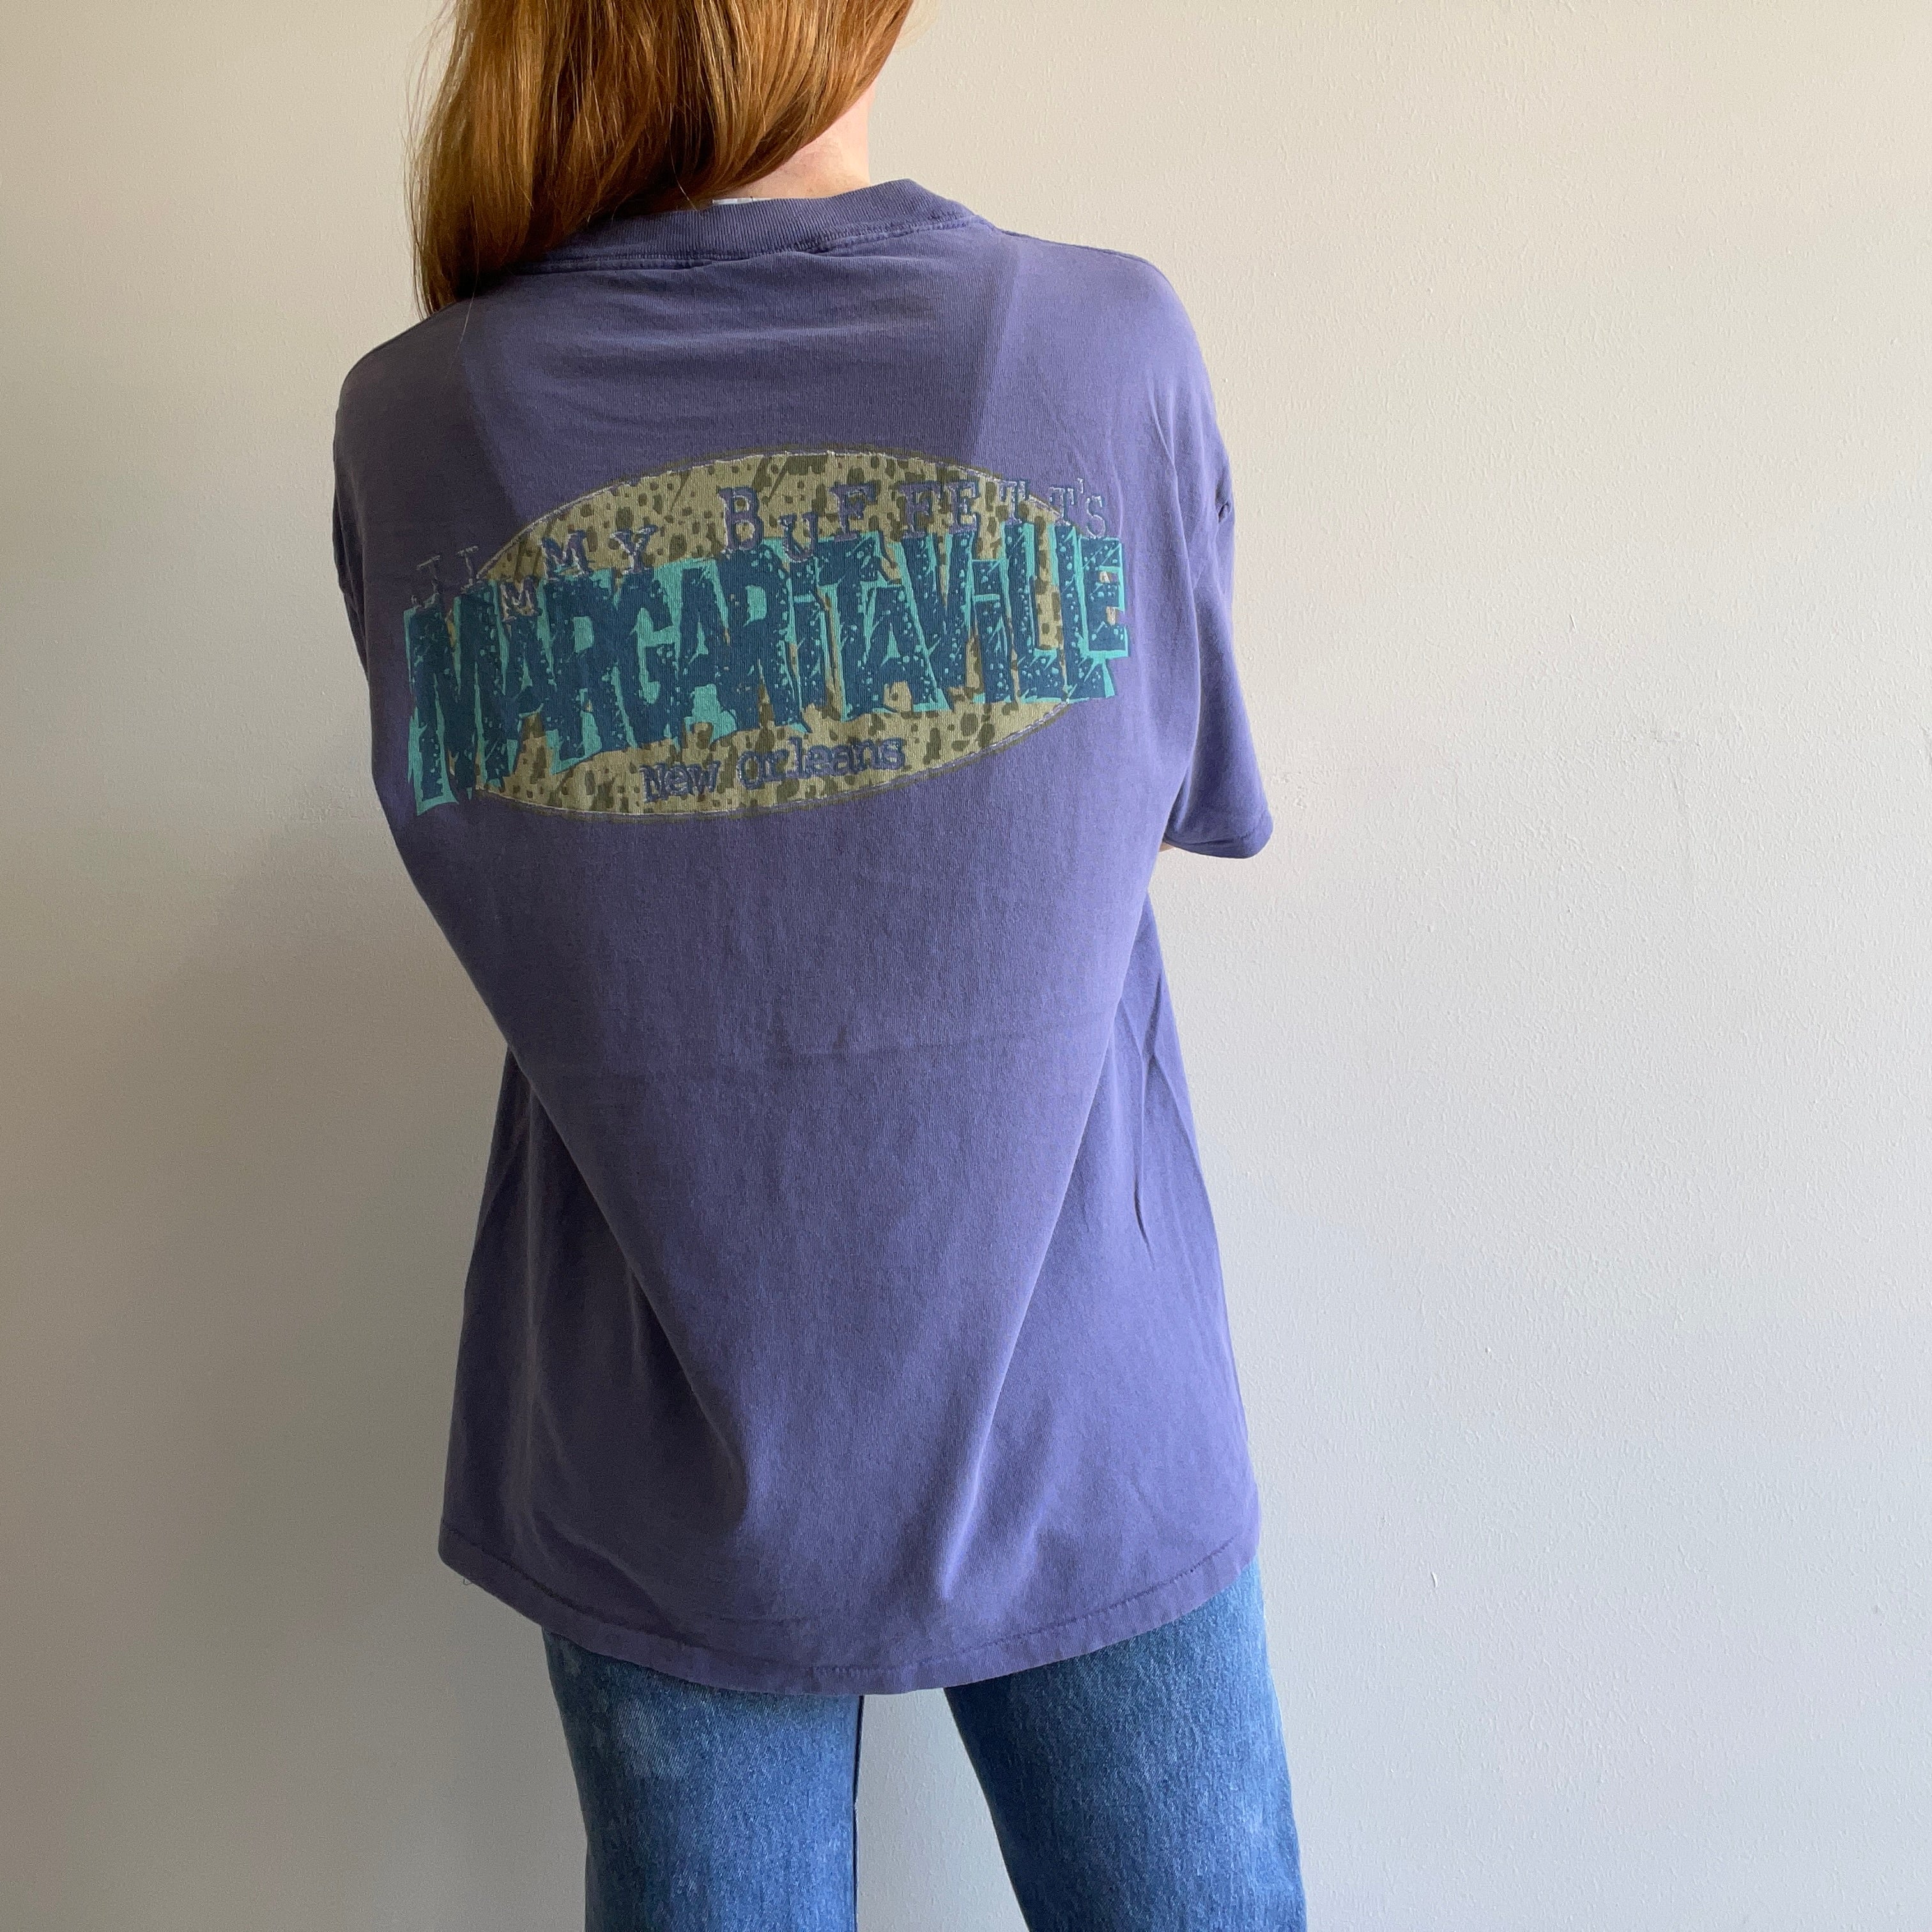 1990s Jimmy Buffet's Margaritaville New Orleans - Backside T-Shirt